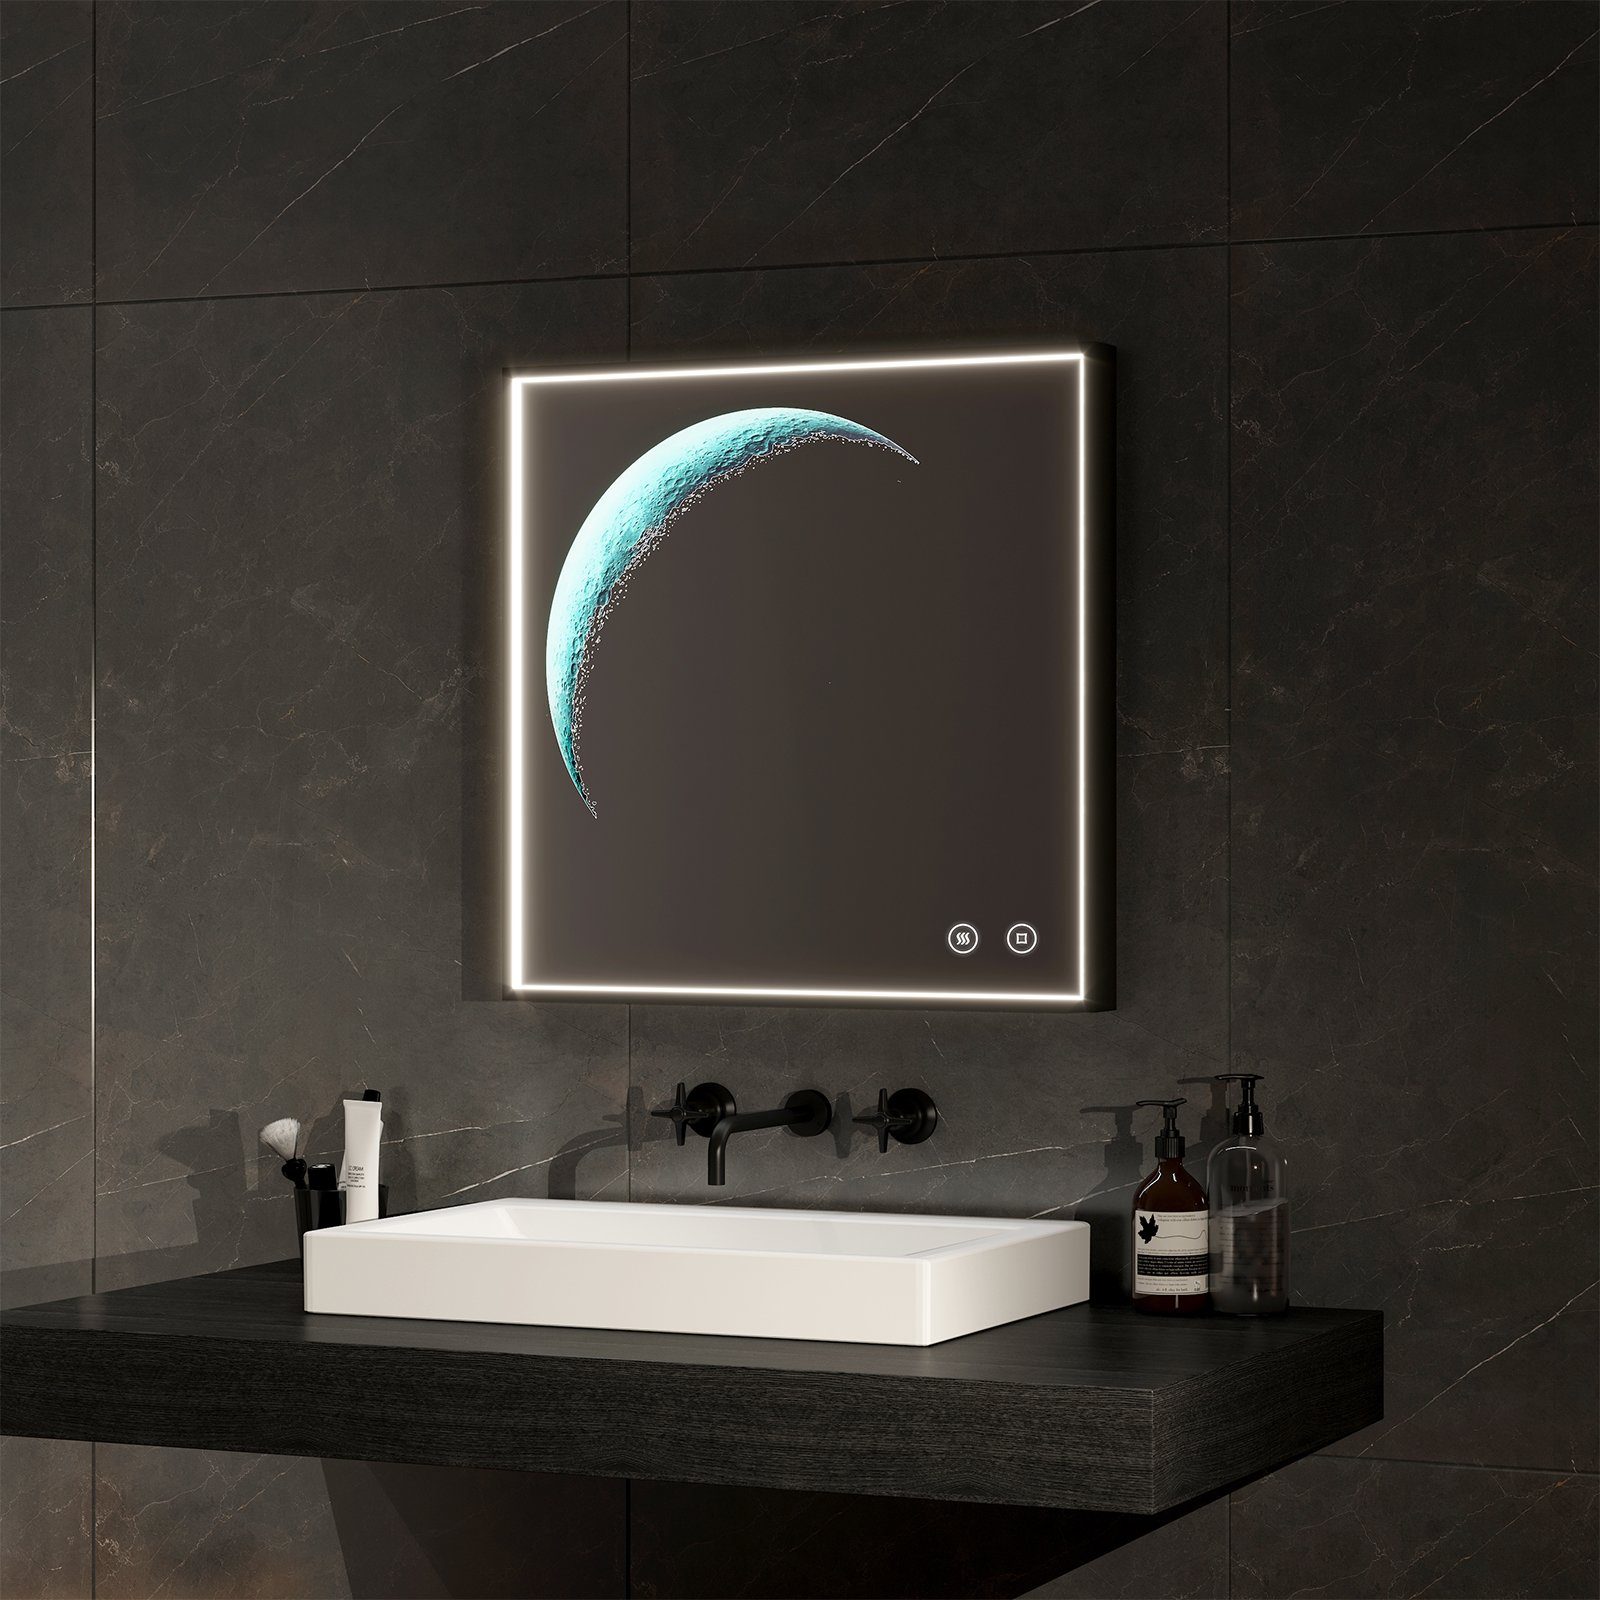 EMKE Badspiegel 6500K LED-Lichtspiegel Mondschein Dekospiegel Touch Wandspiegel, mit Schwarzem Rahmen,Beschlagfrei,Energiesparend